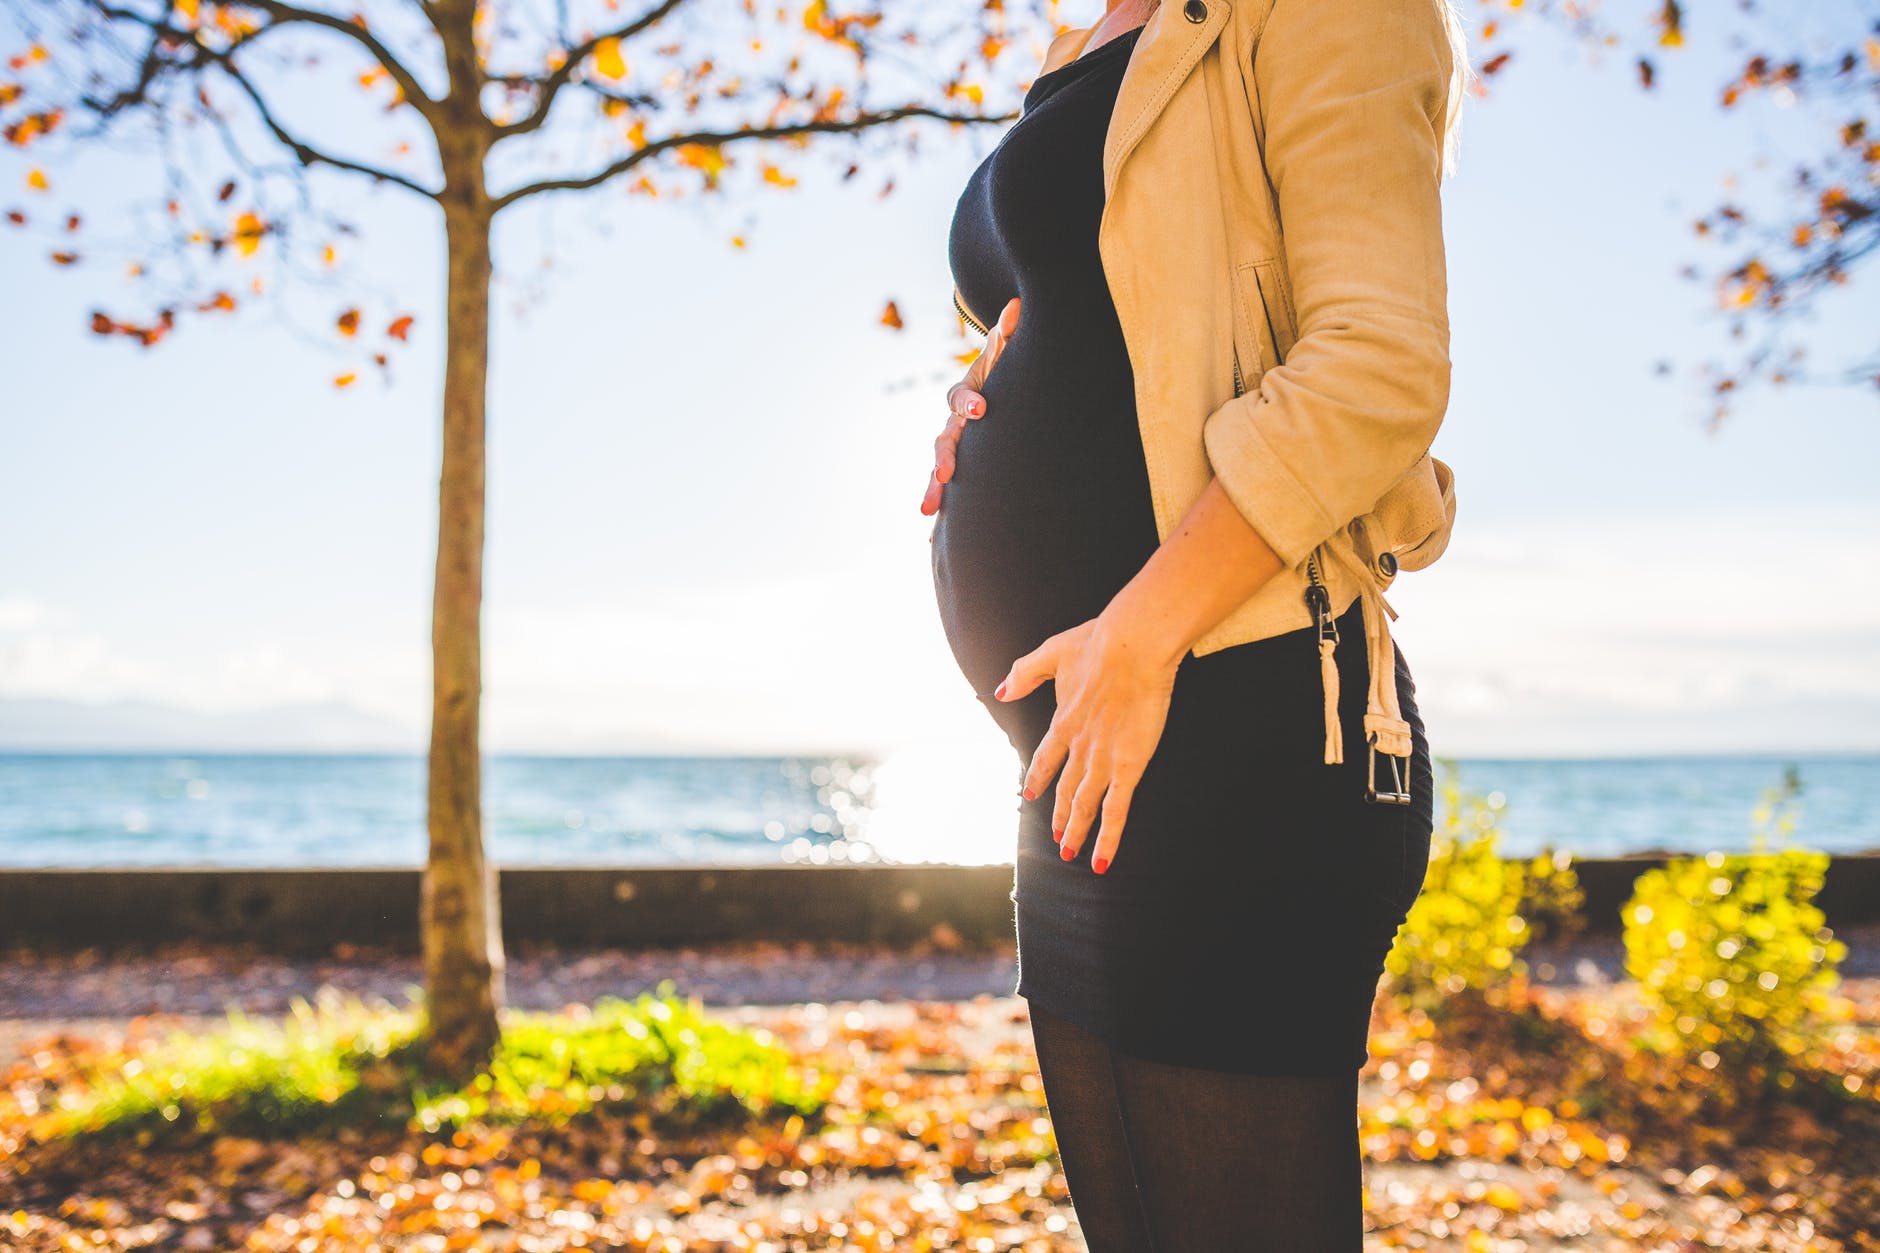 Kruralgija in nosečnost: Kako obvladovati napade? (vaje)